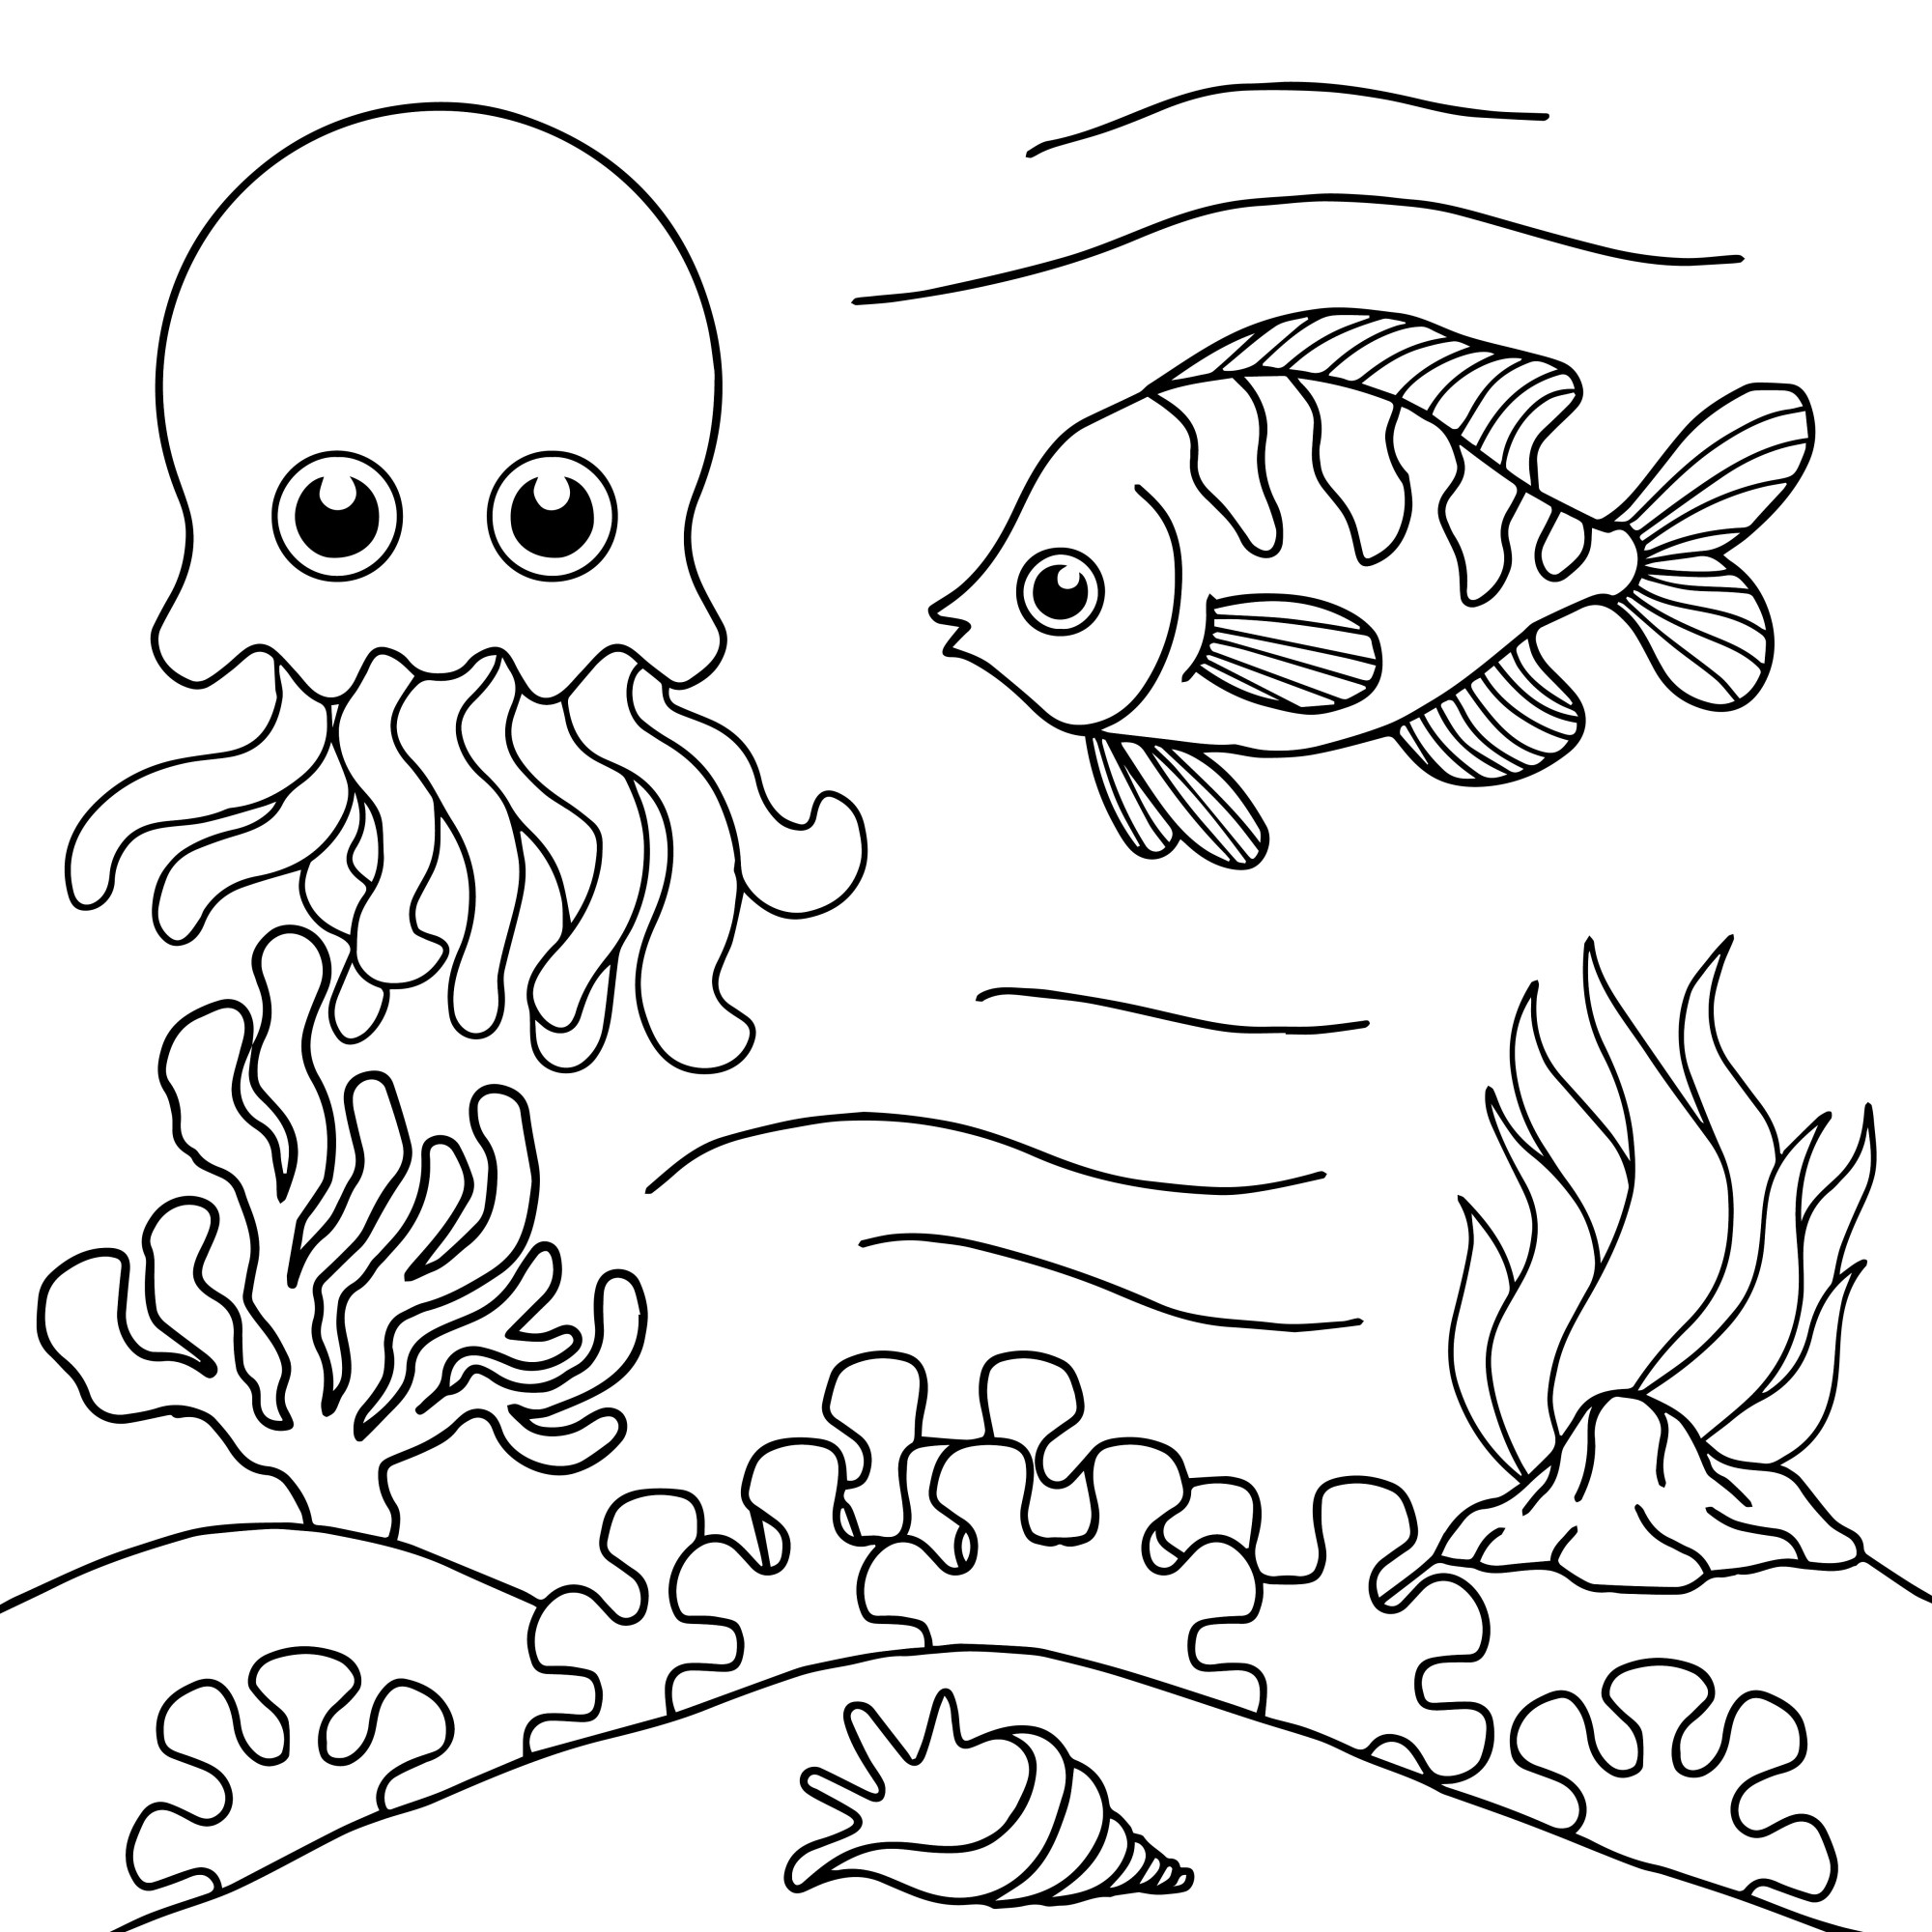 Раскраска для детей: рыба и осьминог